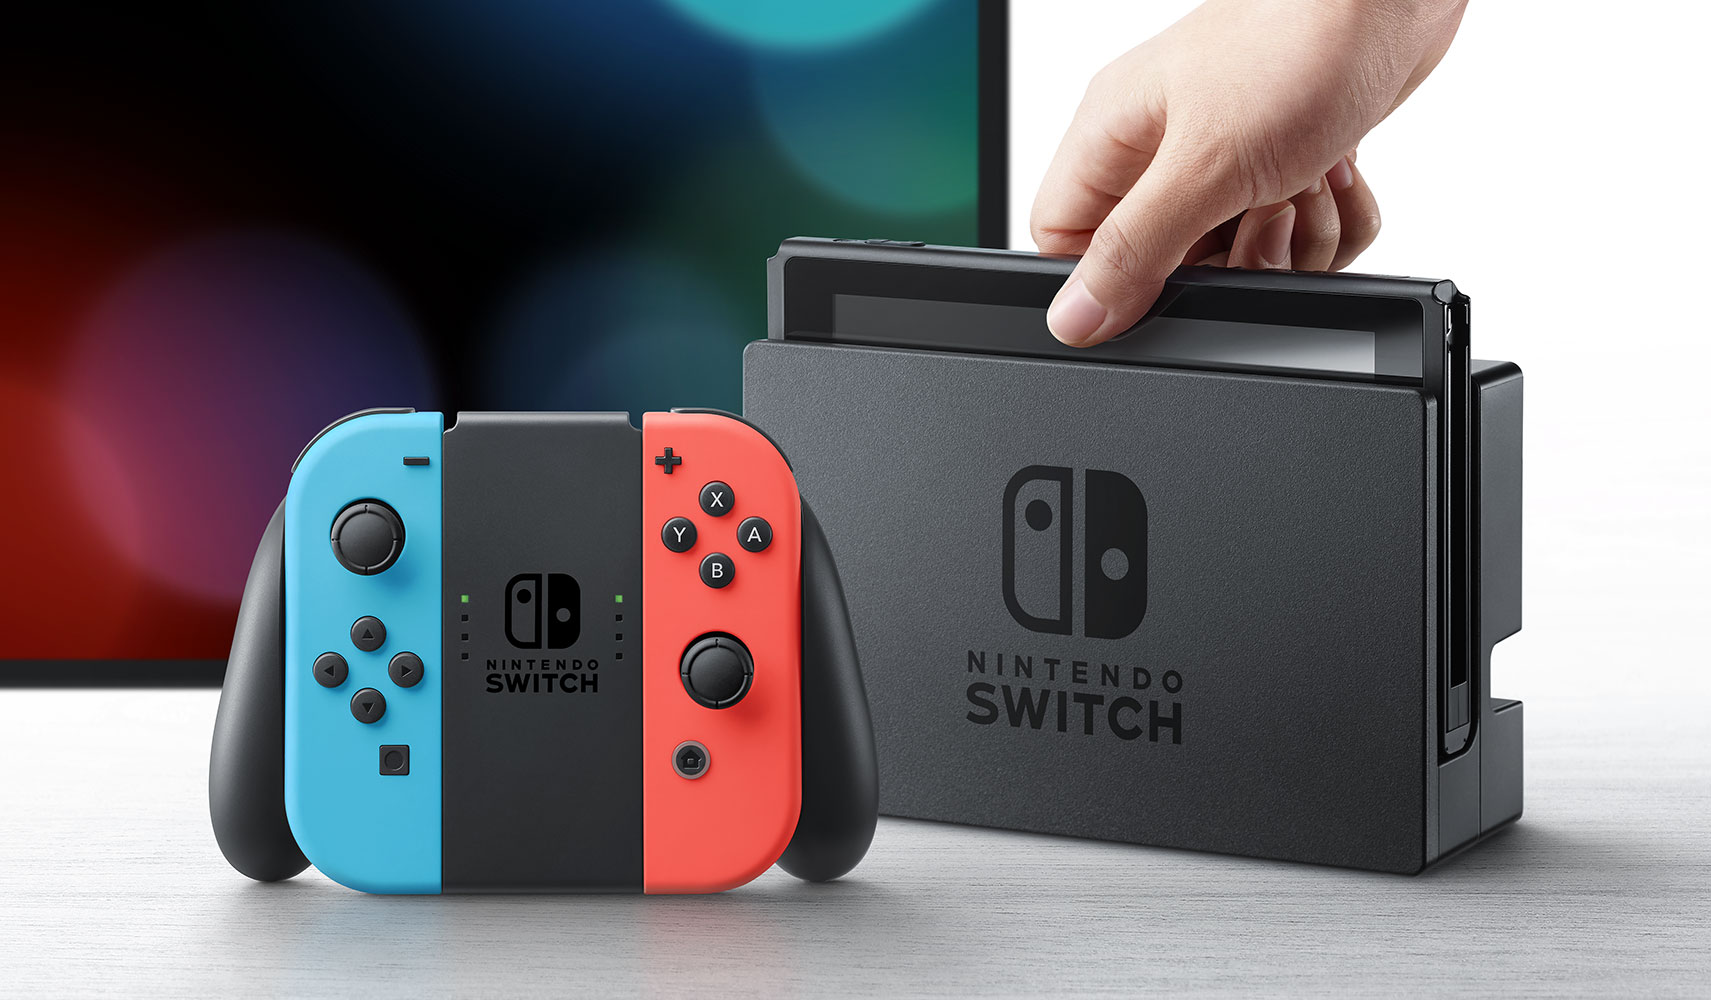 限定商品●ニンテンドースイッチ Nintendo Switch 本体のみ 2018年製● ニンテンドースイッチ本体